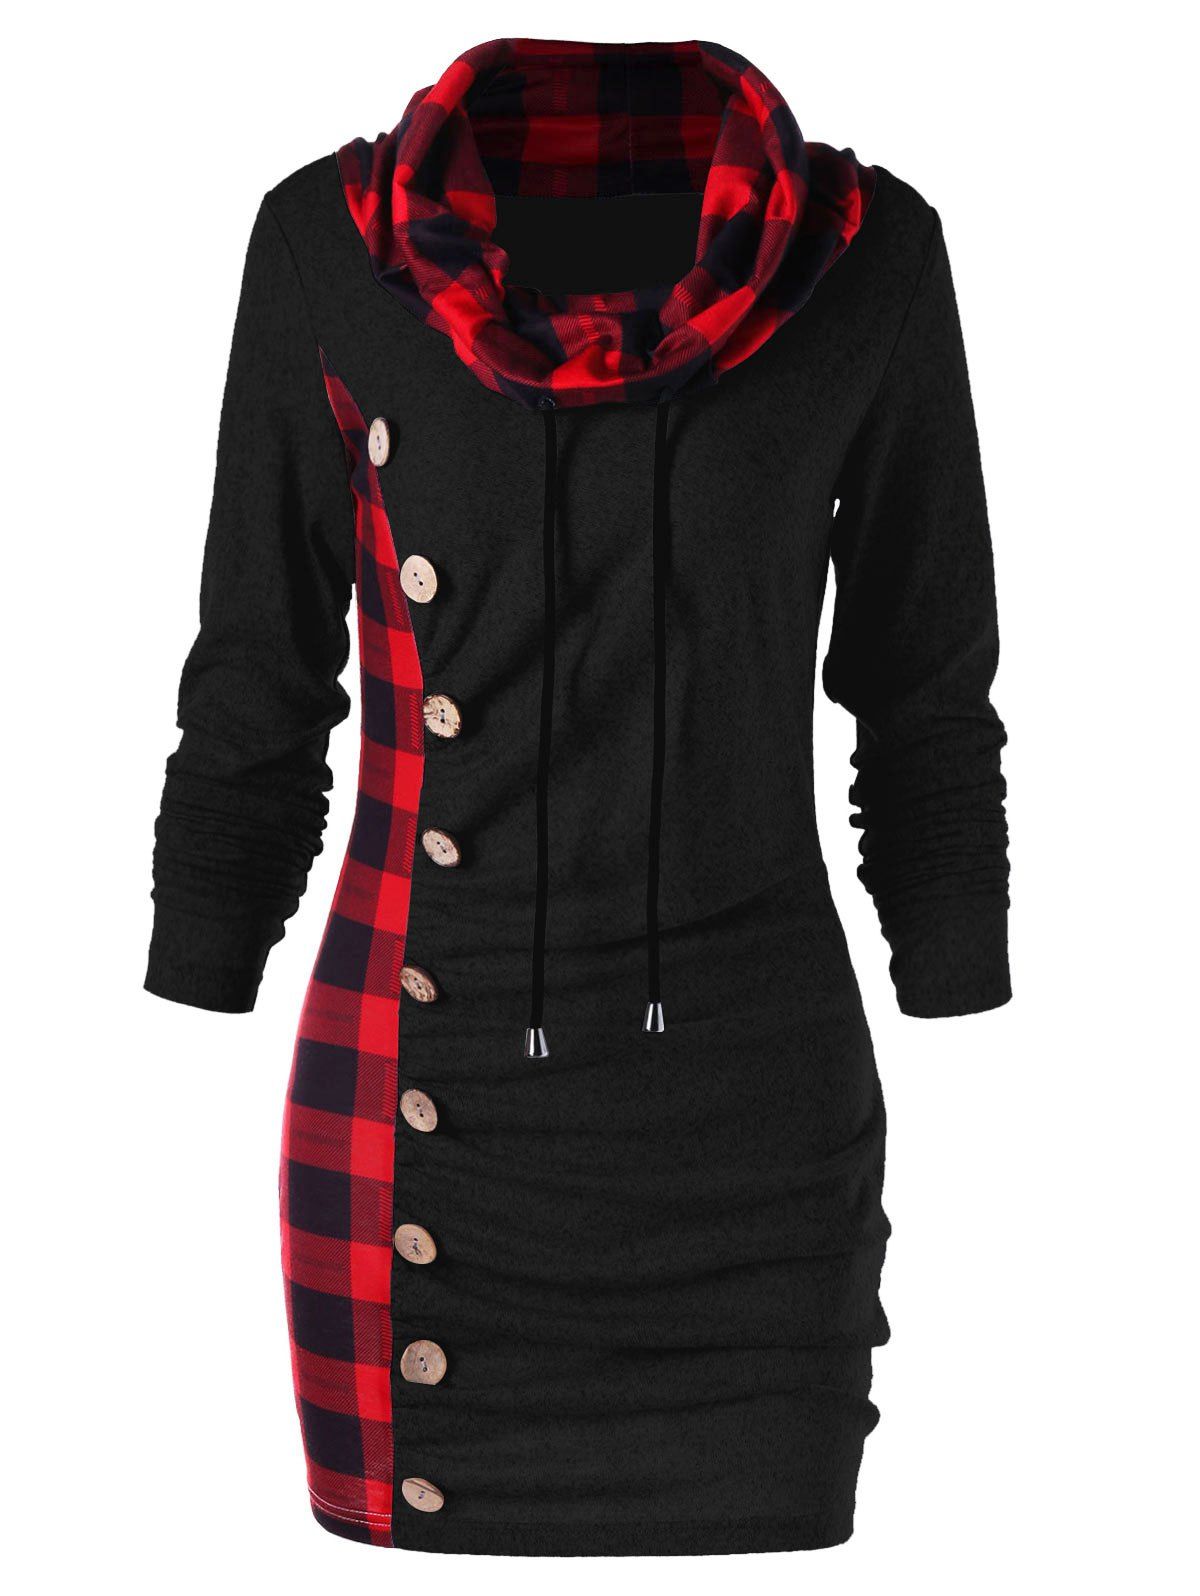 Plaid Drawstring Cowl Neck Tunic Sweatshirt Dress - RED/BLACK 2XL